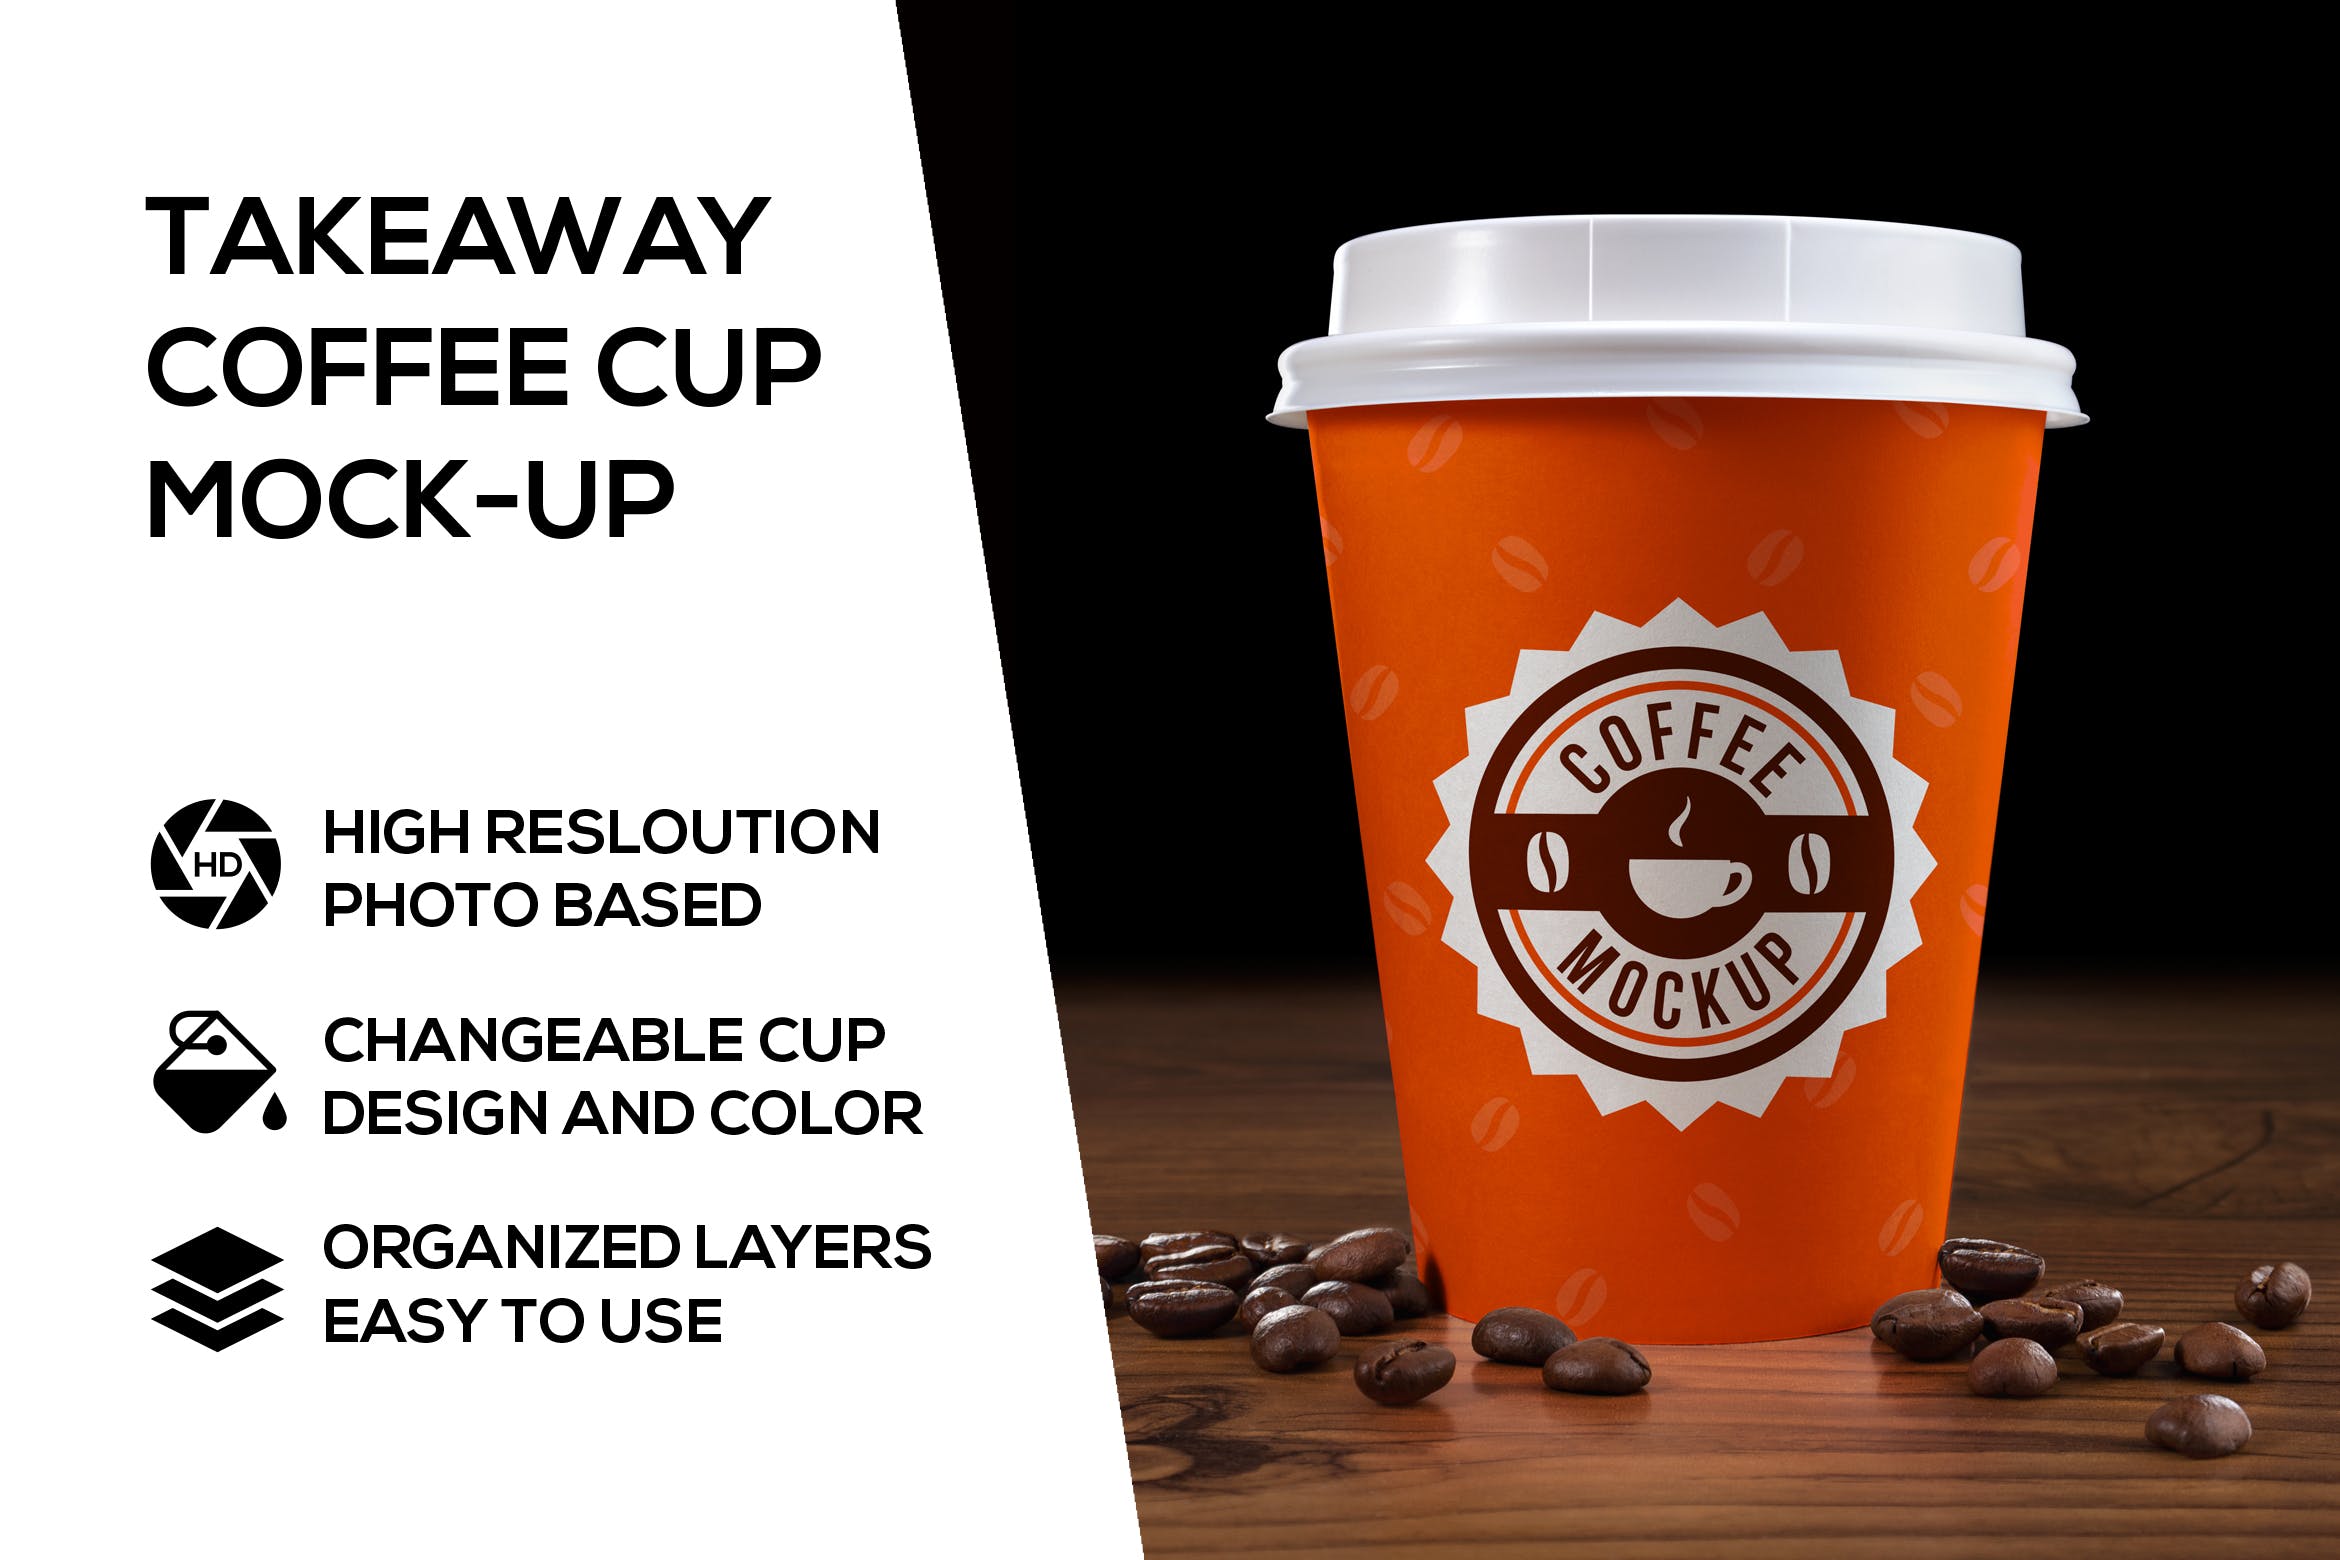 外卖咖啡杯外观设计图第一素材精选模板 Takeaway coffee cup mockup插图